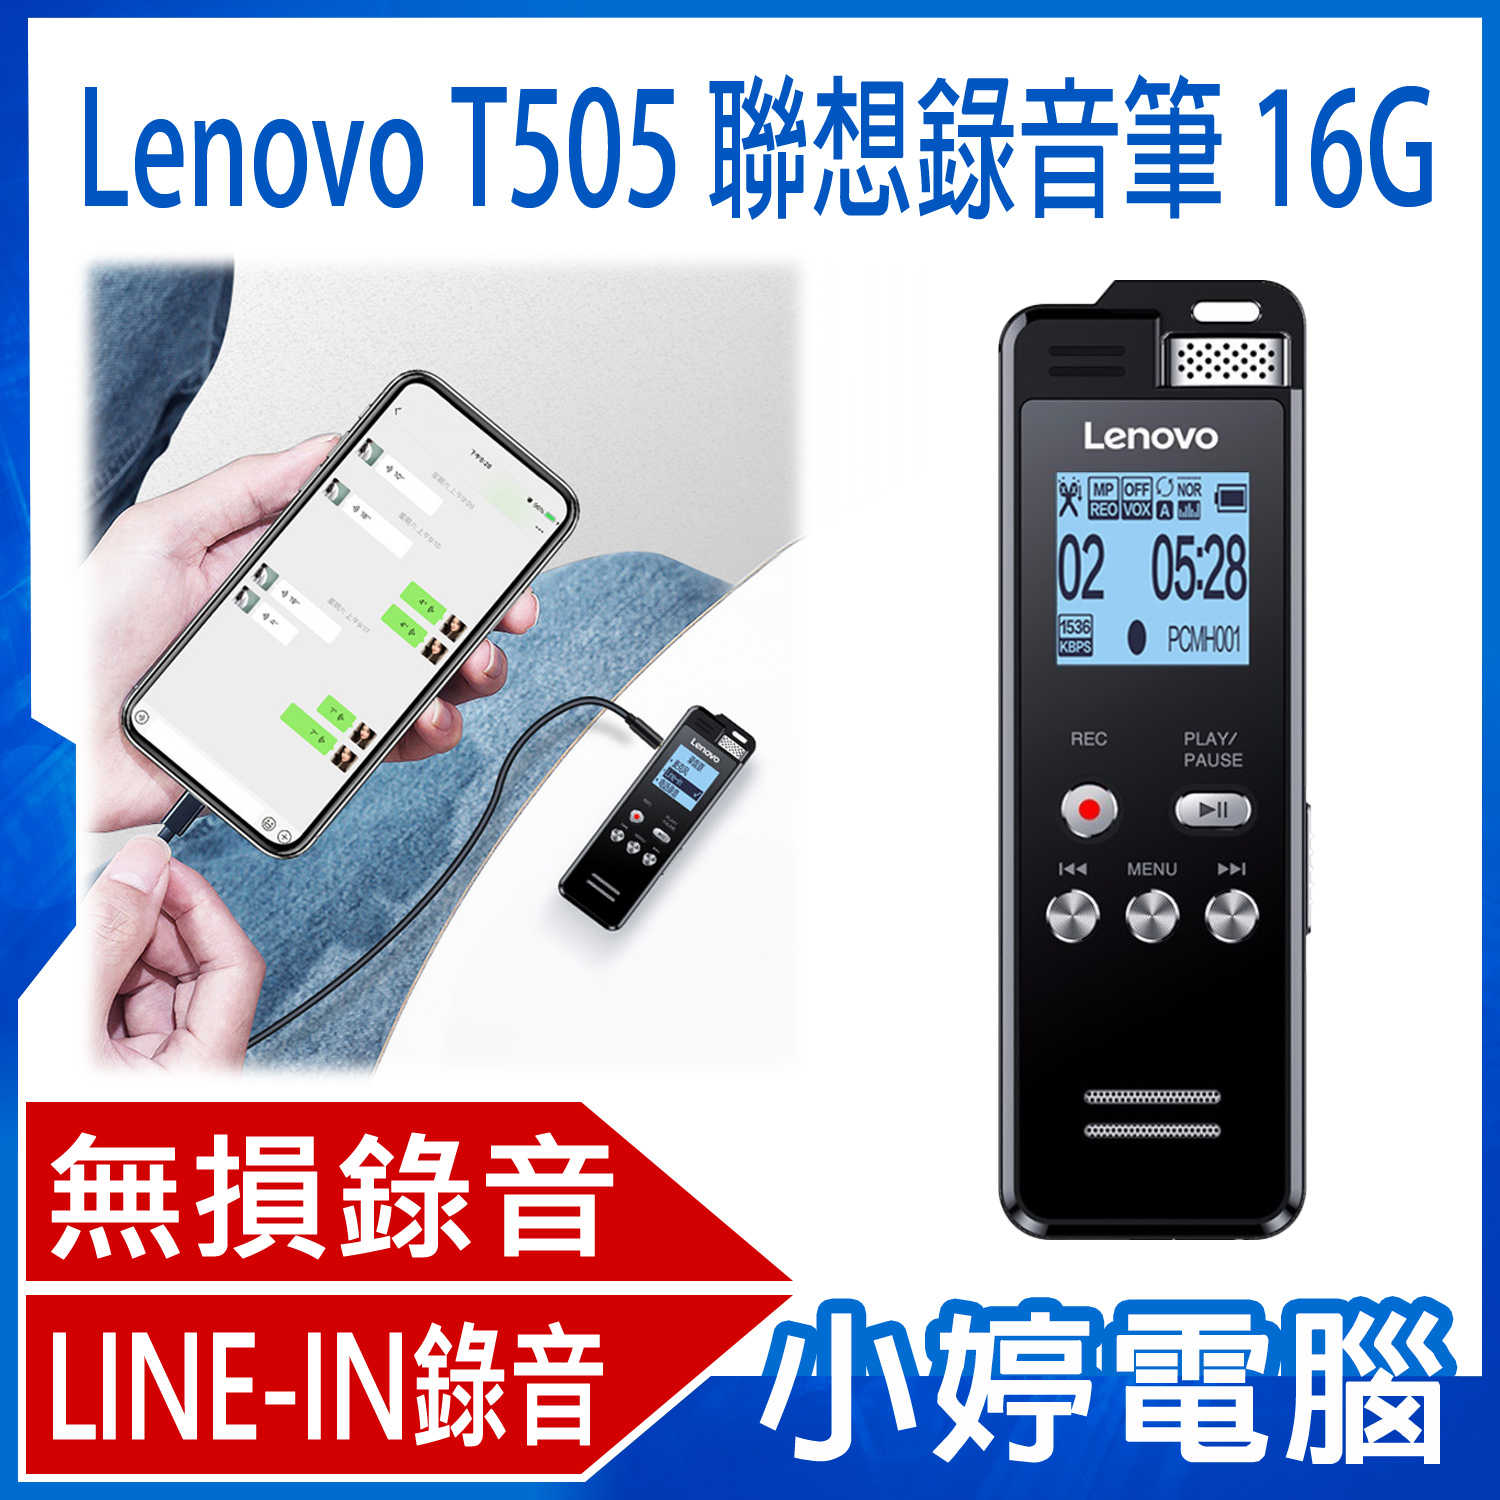 【小婷電腦】全新 Lenovo T505 聯想錄音筆 16G 密碼保護 錄音檔編輯 LINE-IN錄音 支援TF卡